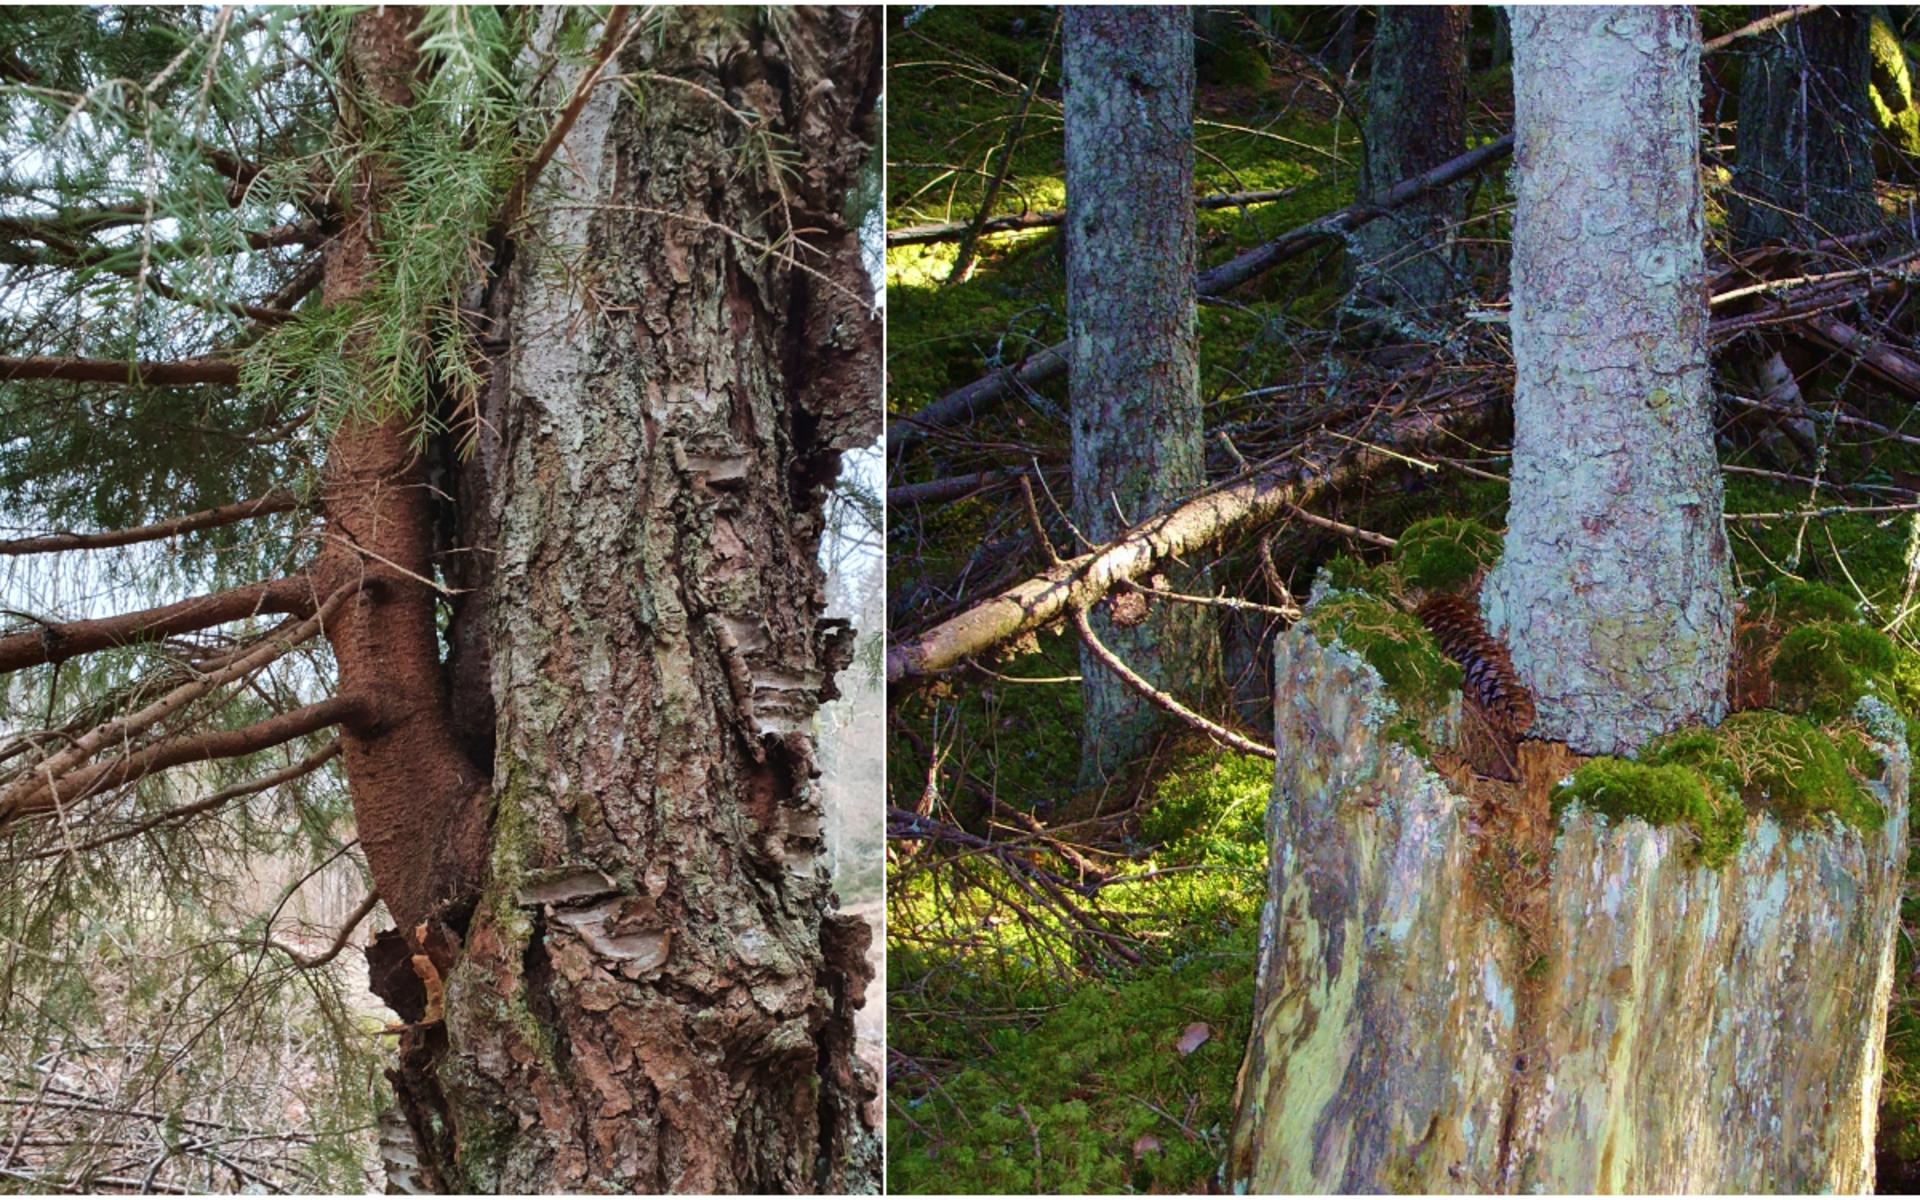 Life finds a way. I Kroppefjäll, Dalsland växer en gran i en björk och i Färnebofjärdens nationalpark i Gästrikland växer samma eller ett nytt träd ur en stubbe.